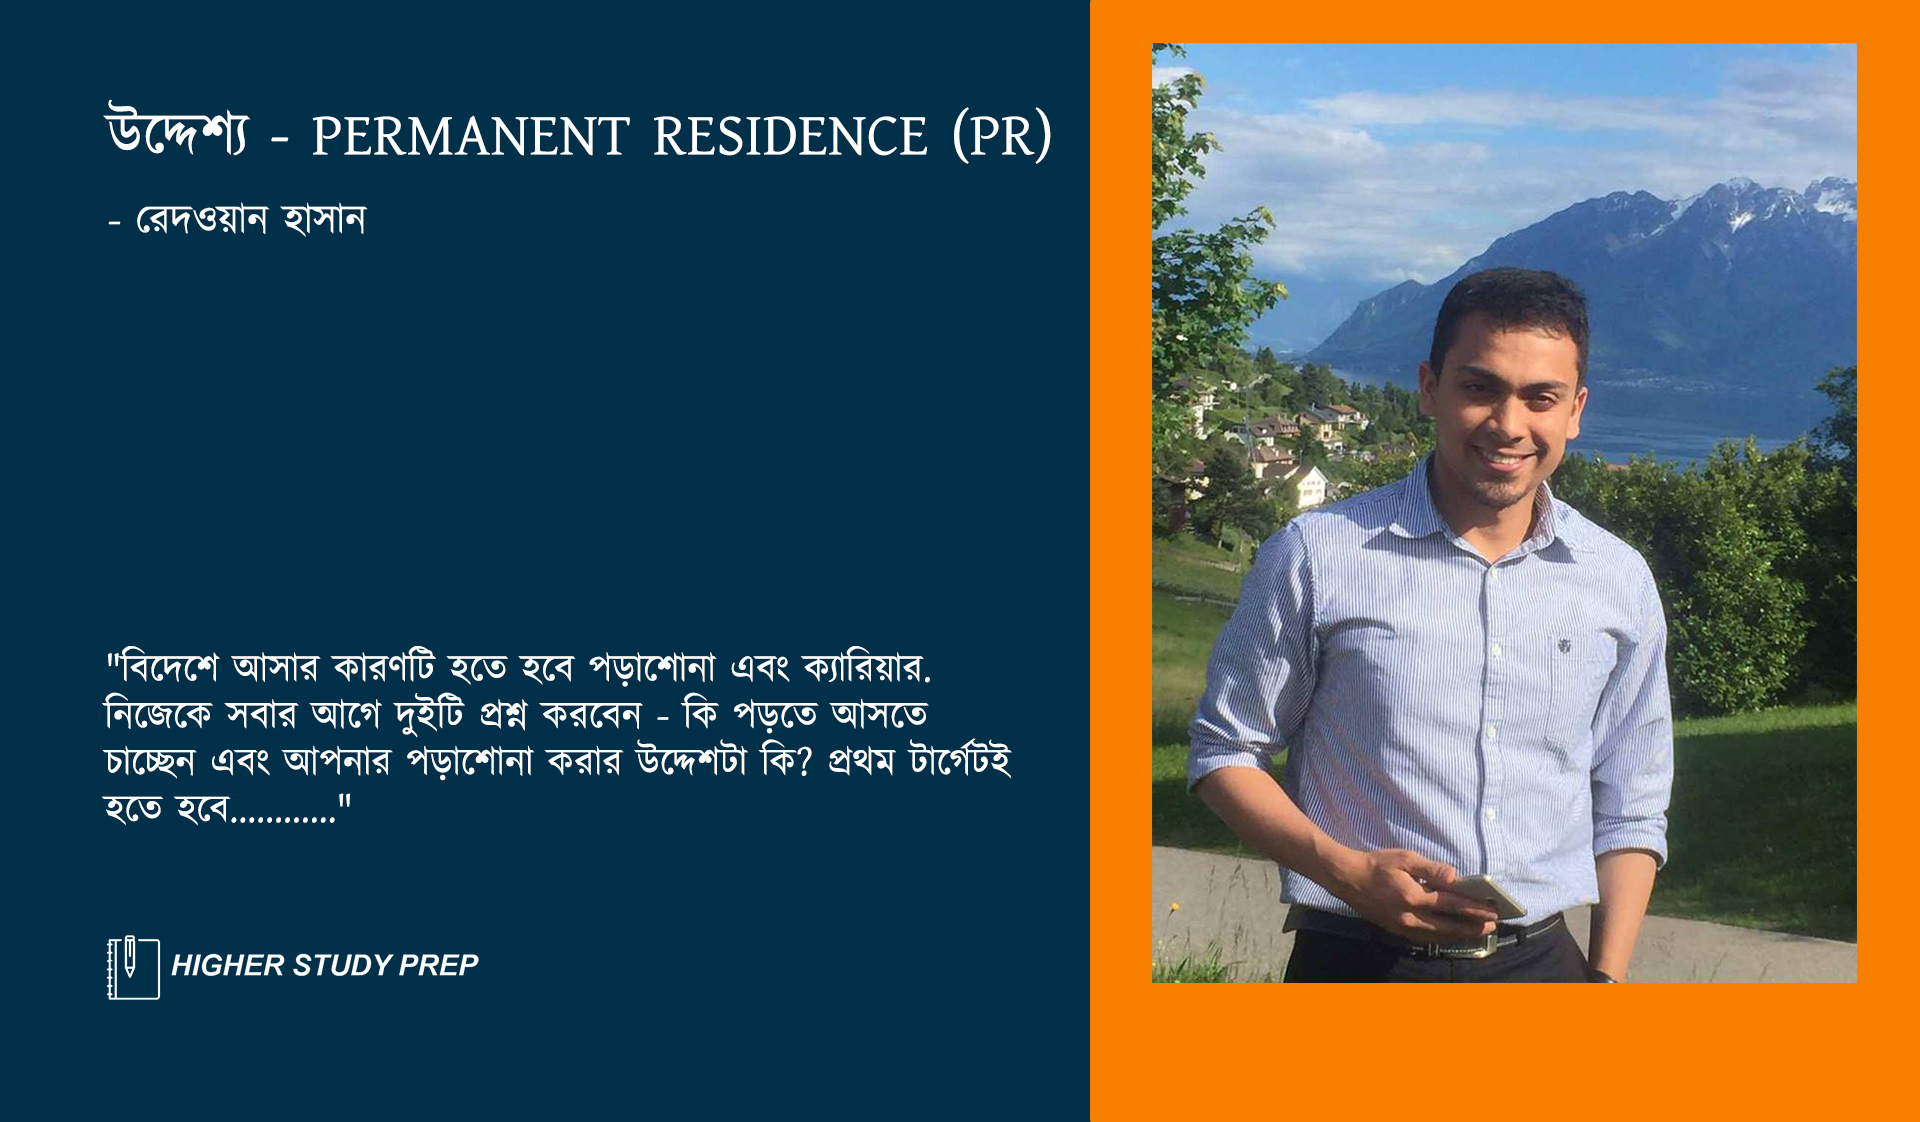 উদ্দেশ্য - Permanent Residence (PR)